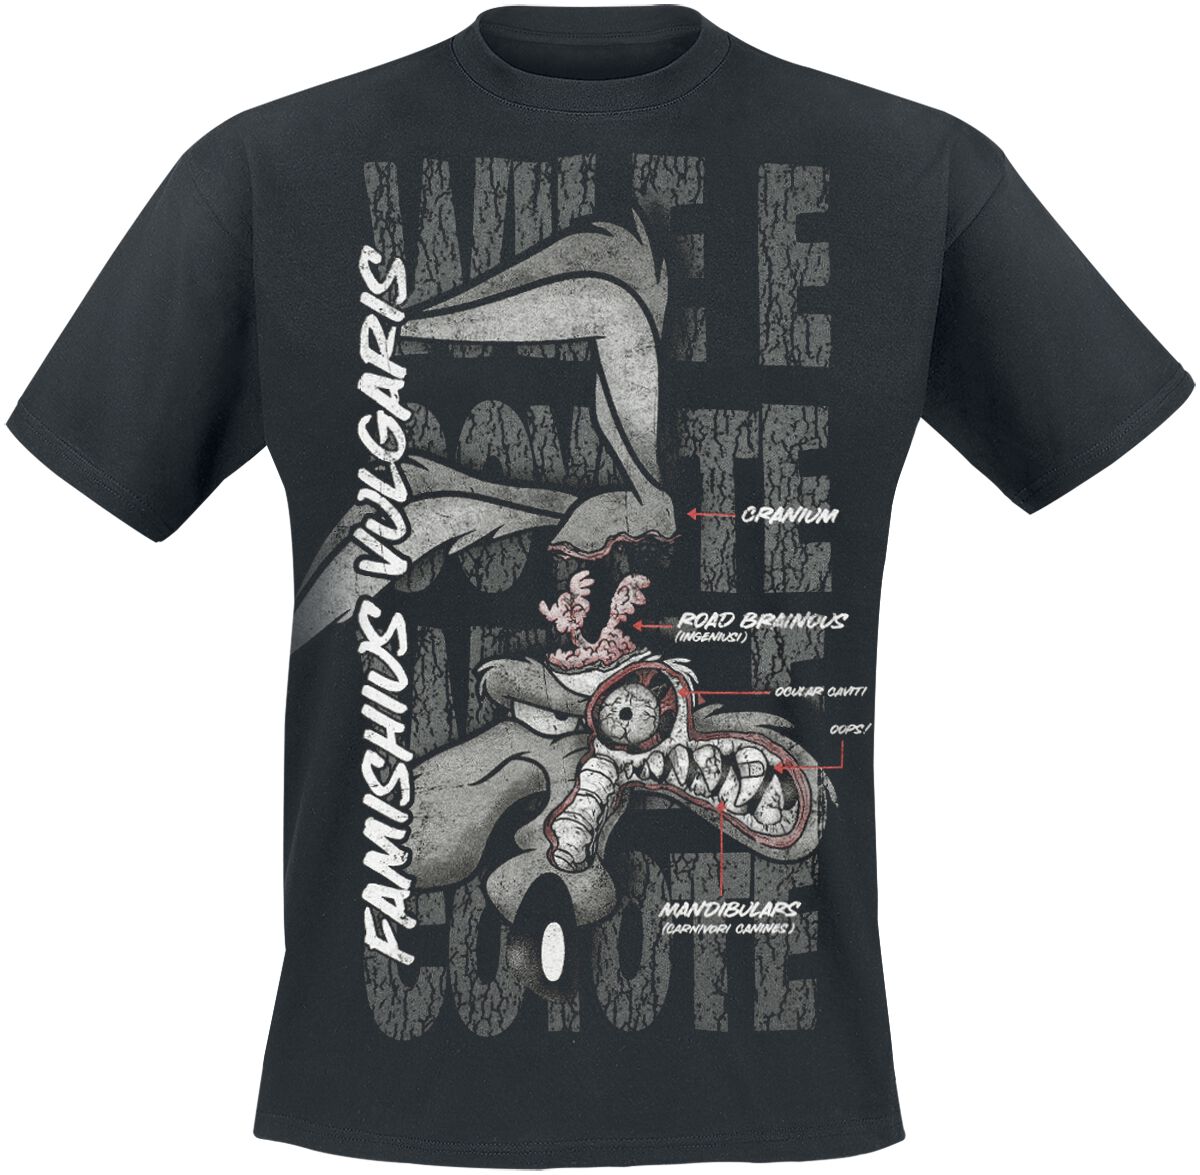 Looney Tunes T-Shirt - Coyote - Famishius Vulgaris - S bis 3XL - für Männer - Größe XL - schwarz  - EMP exklusives Merchandise!